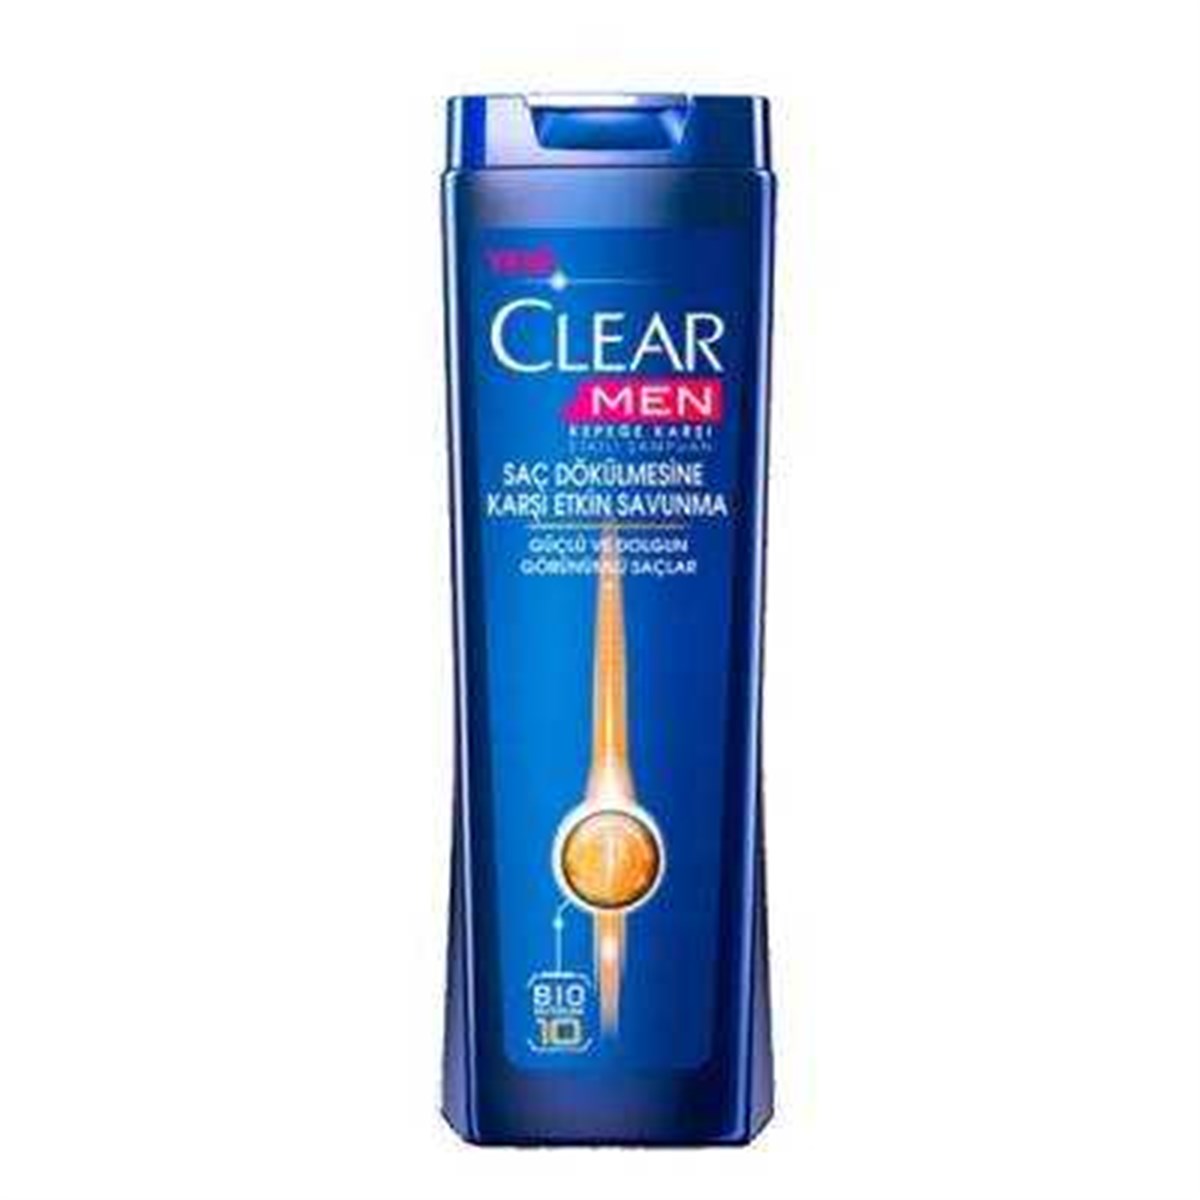 Clear Men Saç Dökülmesine Etkili Şampuan 550ml Fiyatları | Dermosiparis.com